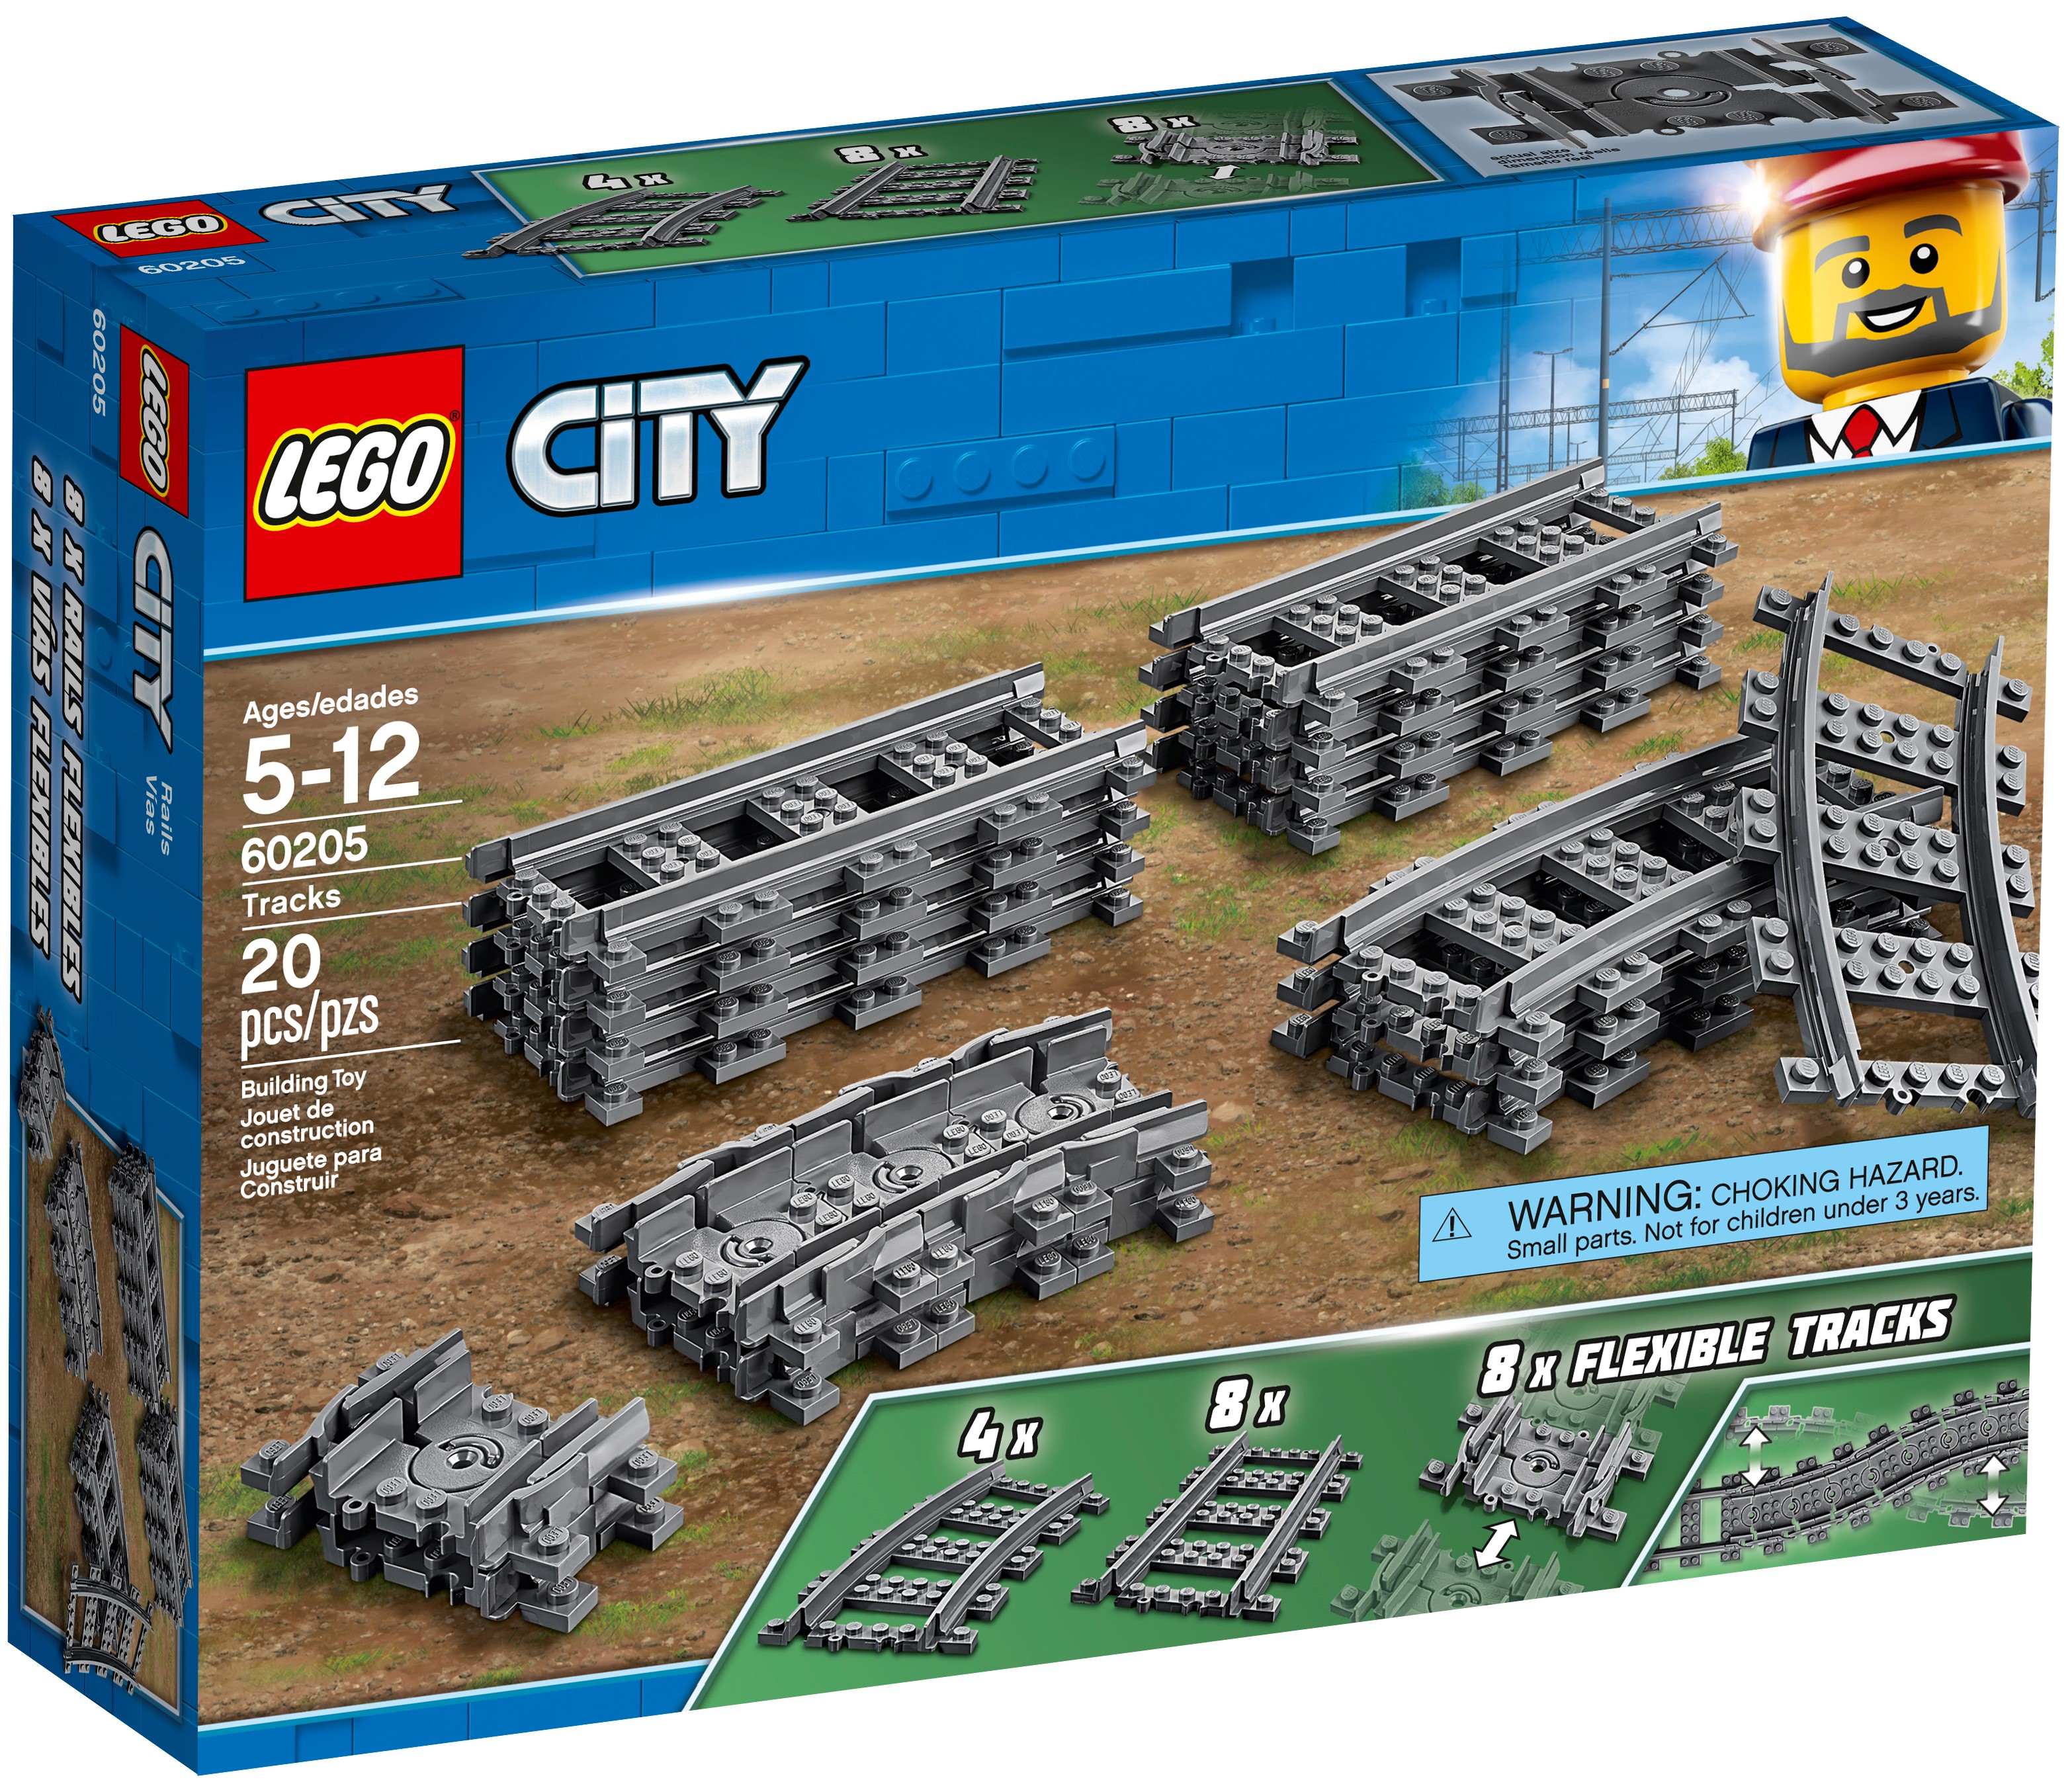 LEGO City 60197 Personenzug 60205 Trains Schienen Tracks N9/18 